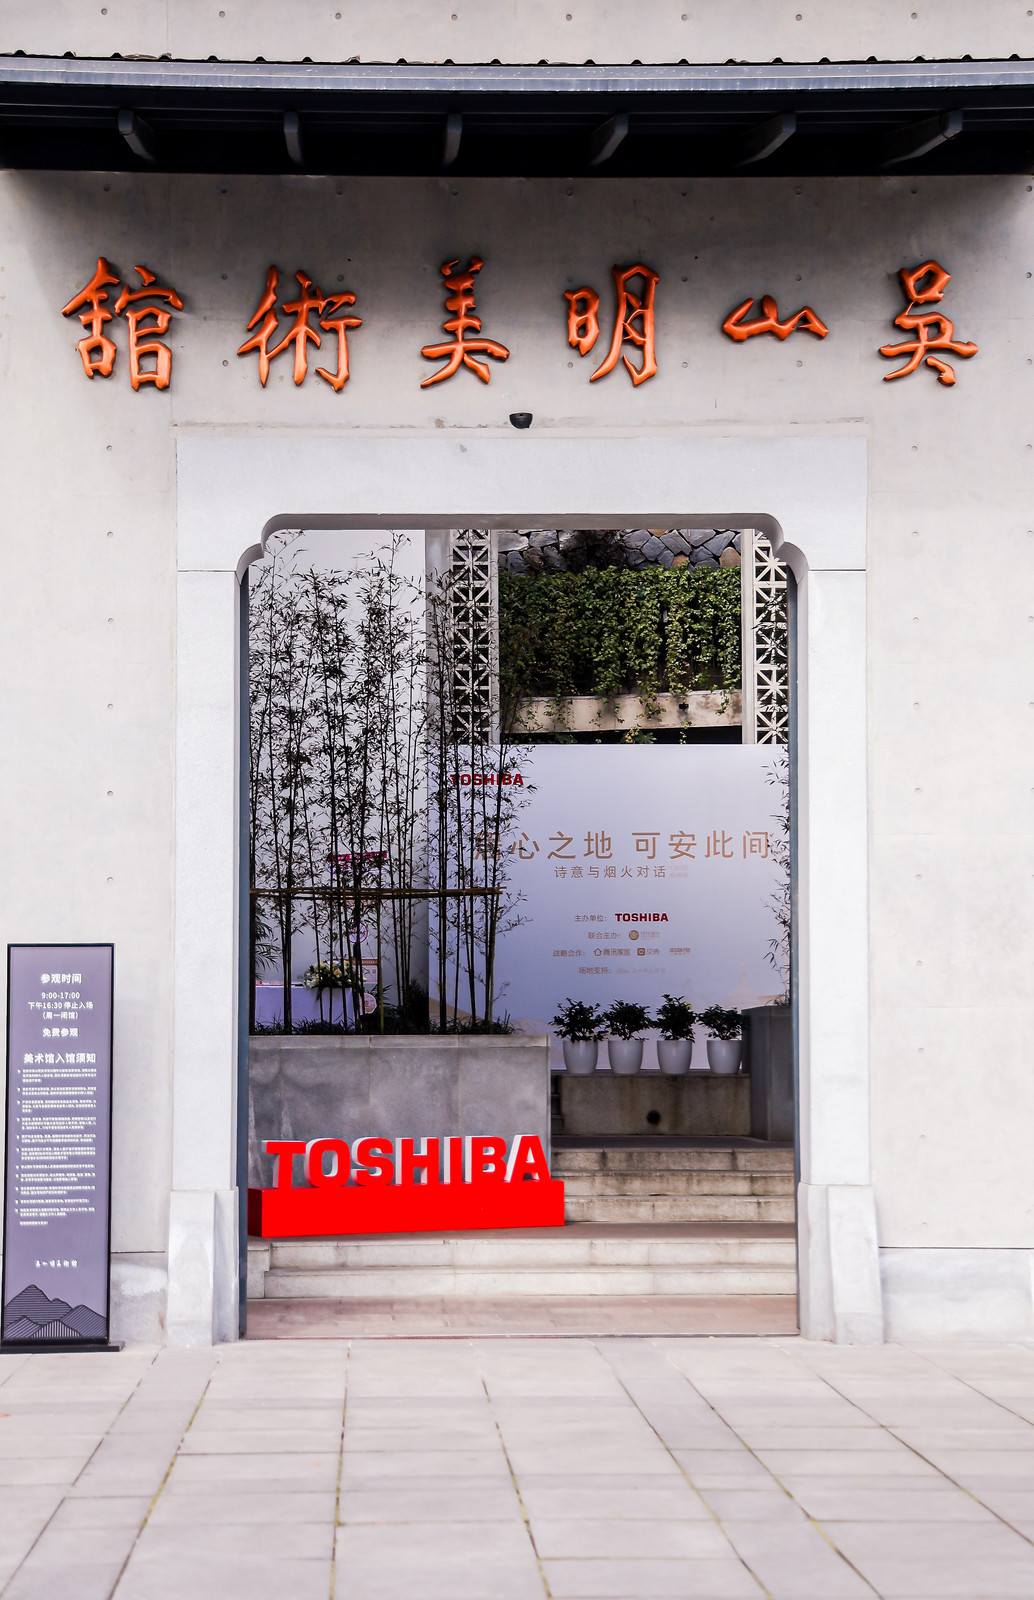 炊火与诗意的对话 东芝设想师美学巡回沙龙·杭州站出色回忆(图1)